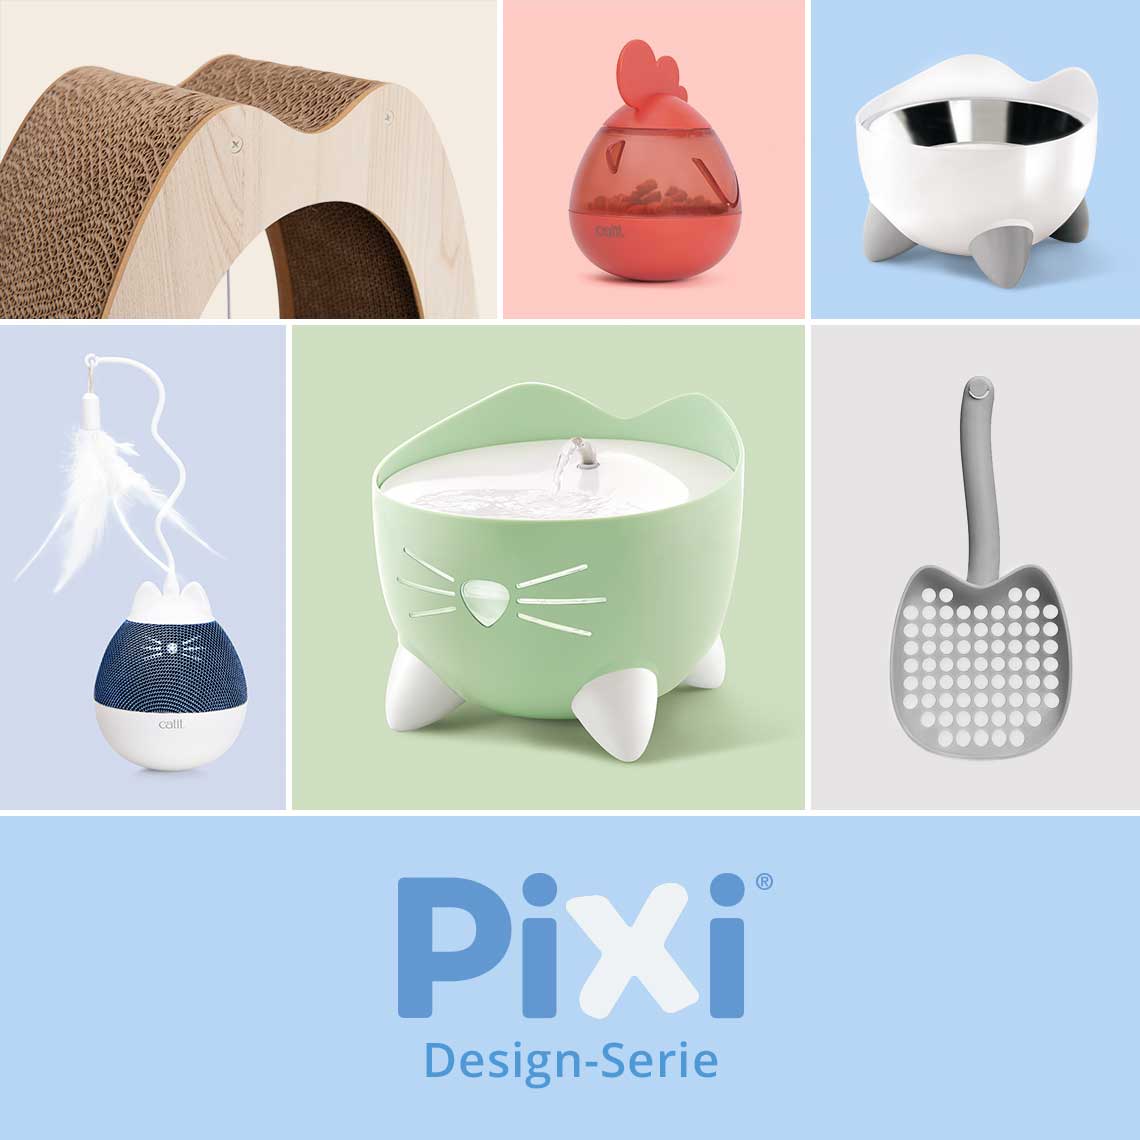 Catit PIXI Design-Serie